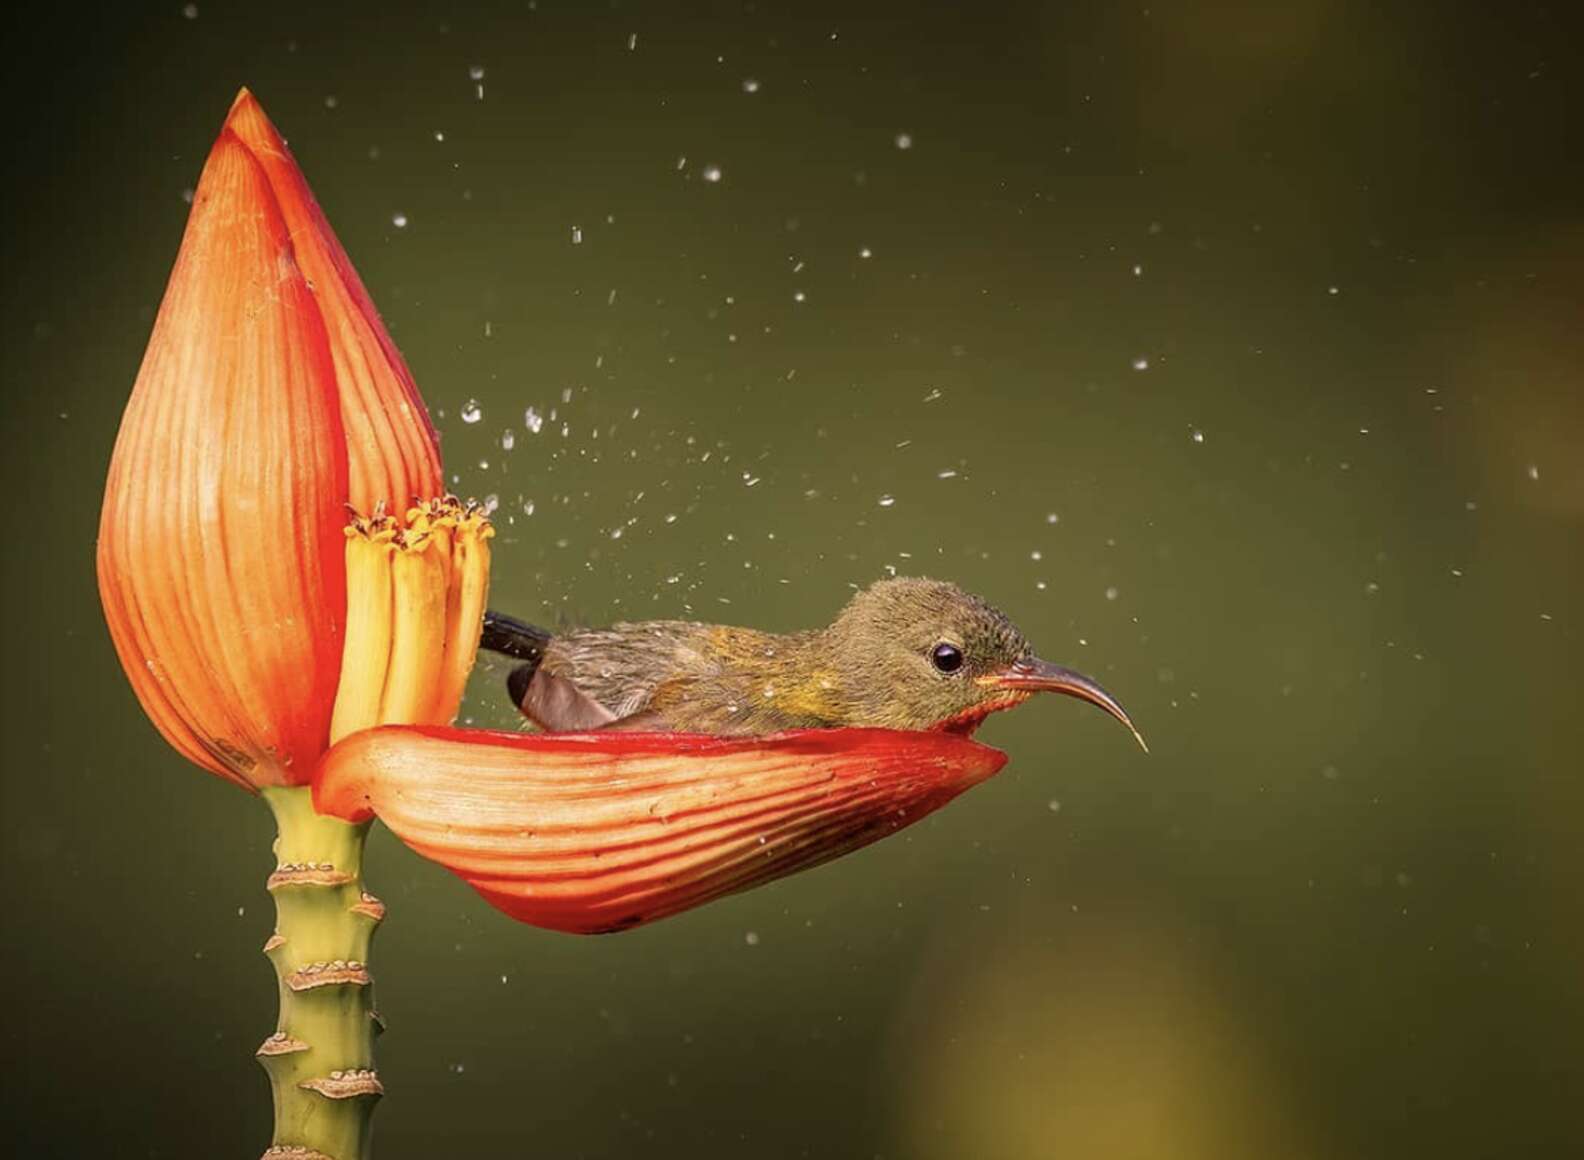 Chim hút mật no nê rồi ngả lưng ngủ trên cánh hoa, khoảnh khắc chỉ có một lần trong đời Chim-hut-mat-no-ne-roi-nga-lung-ngu-tren-canh-hoa-khoanh-khac-chi-co-mot-lan-trong-doi-46c-5908540